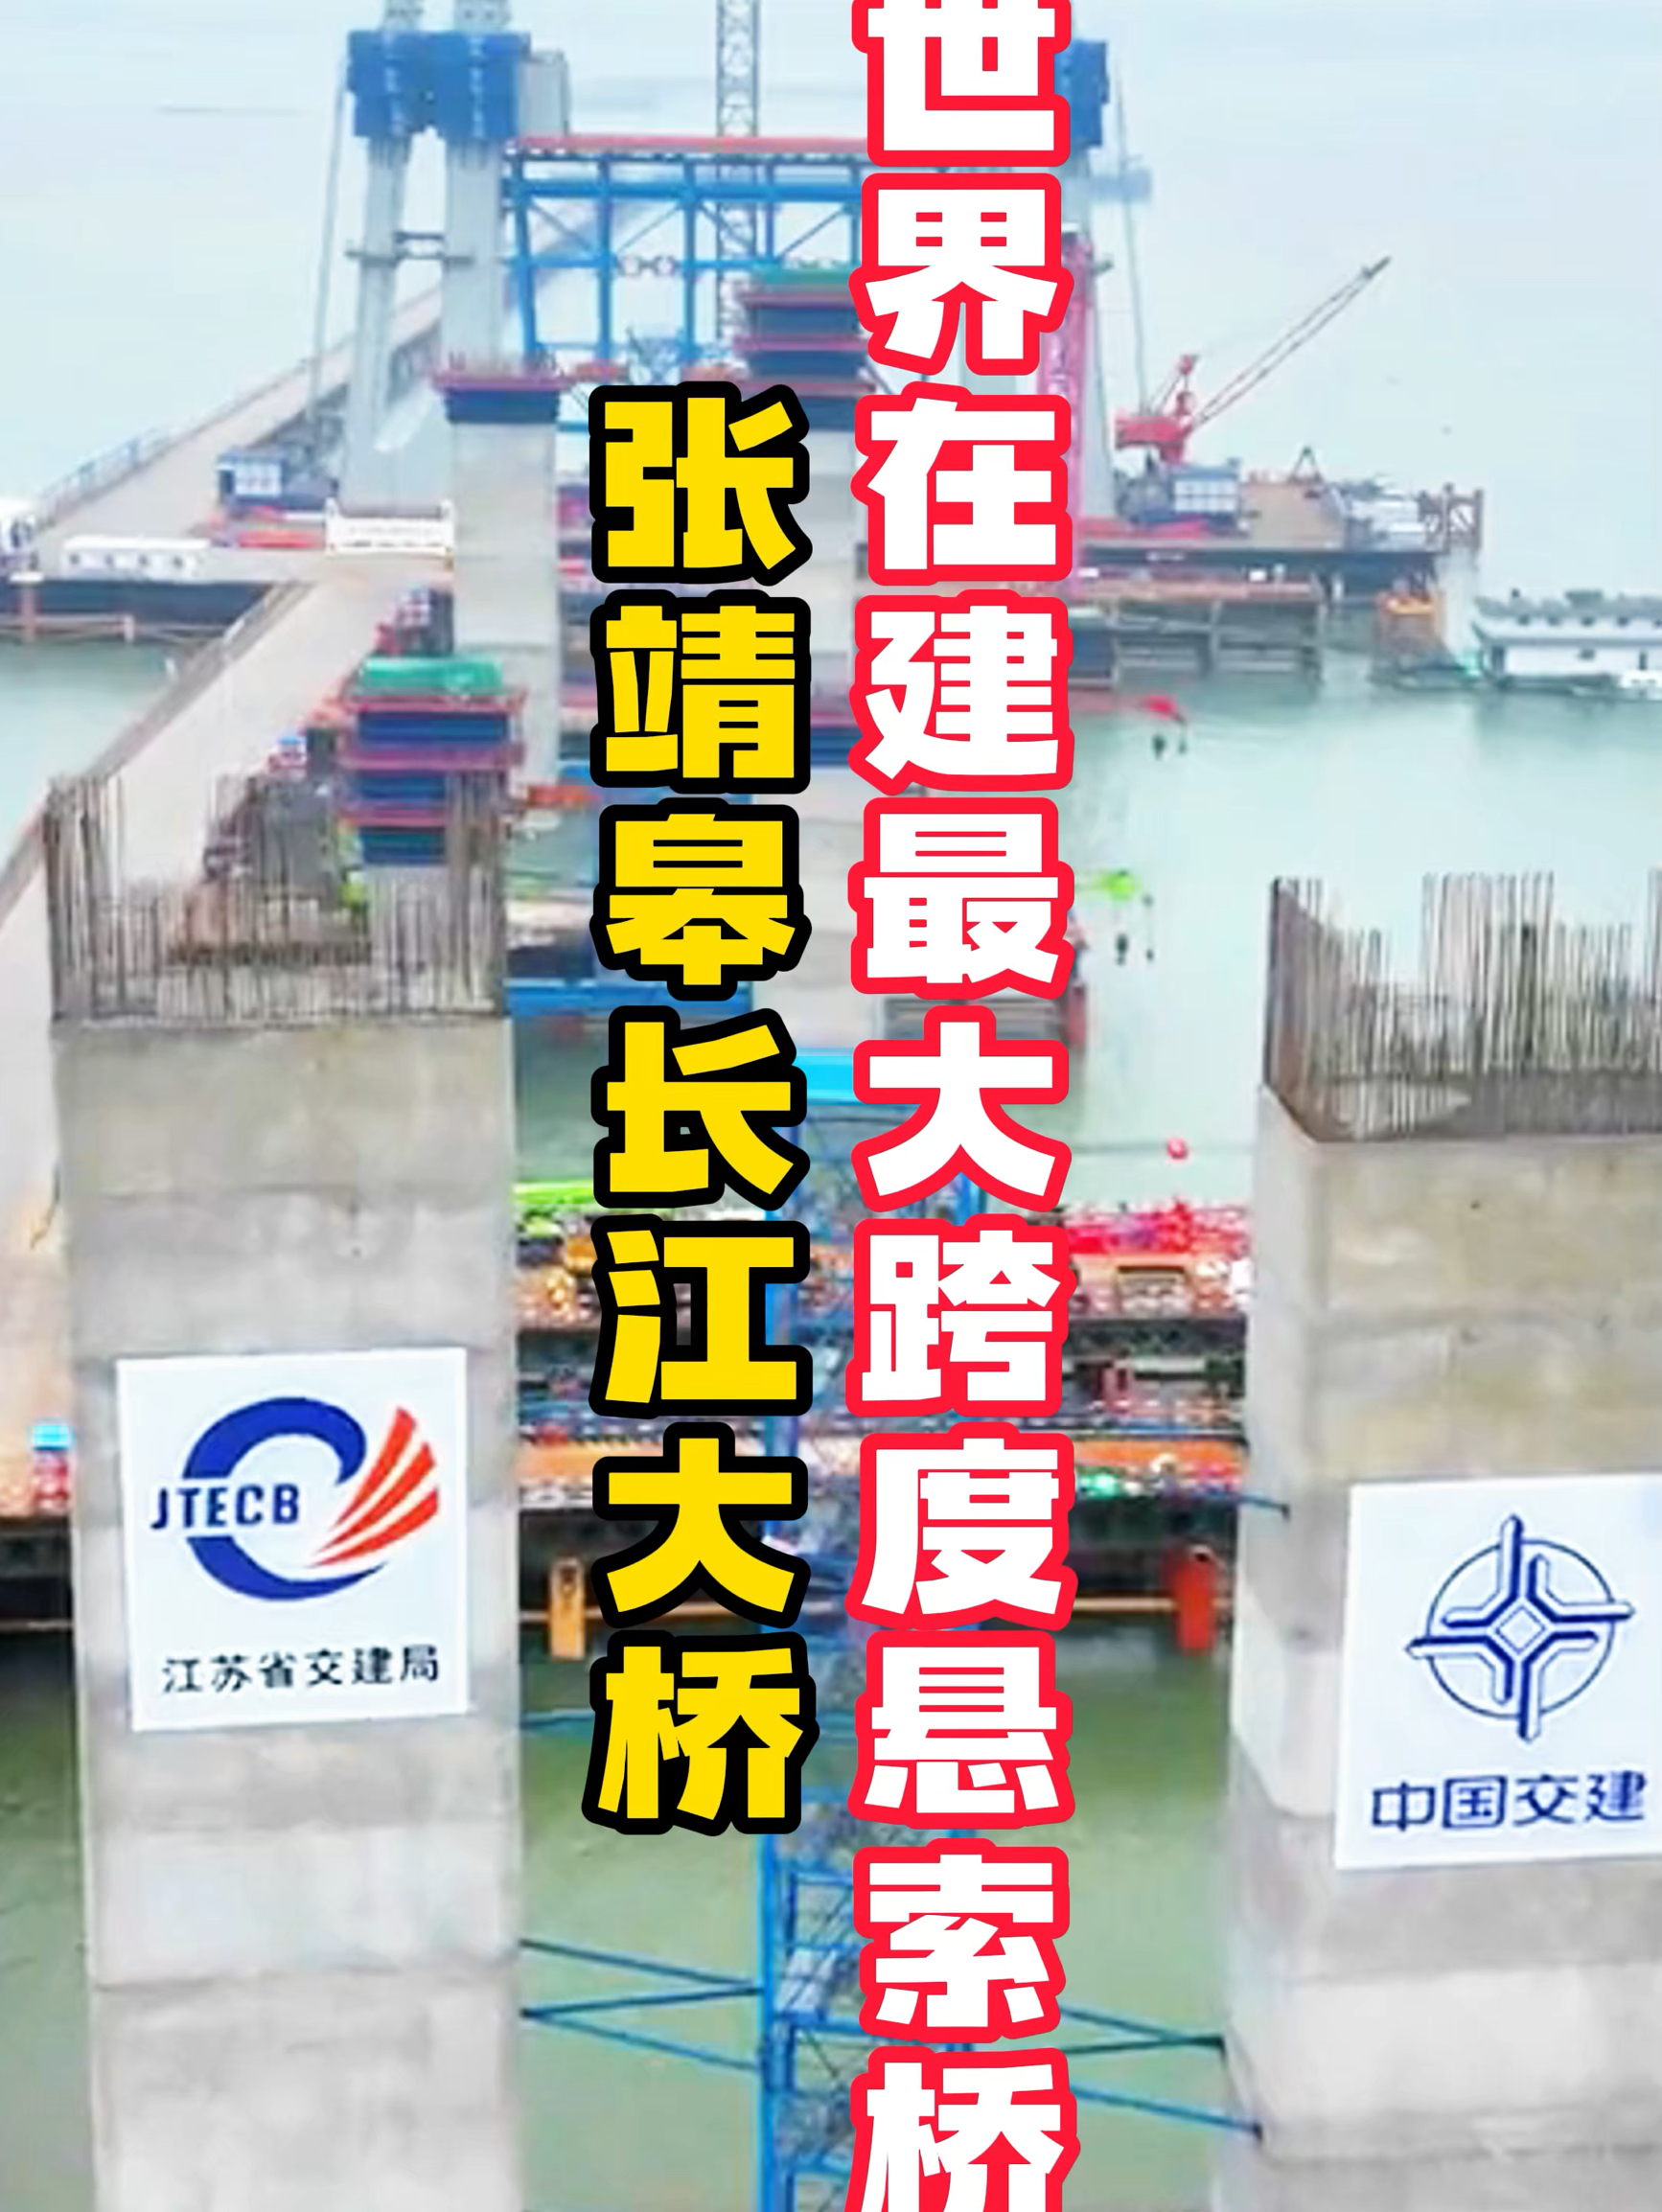 世界在建最大跨度悬索桥—张靖皋长江大桥